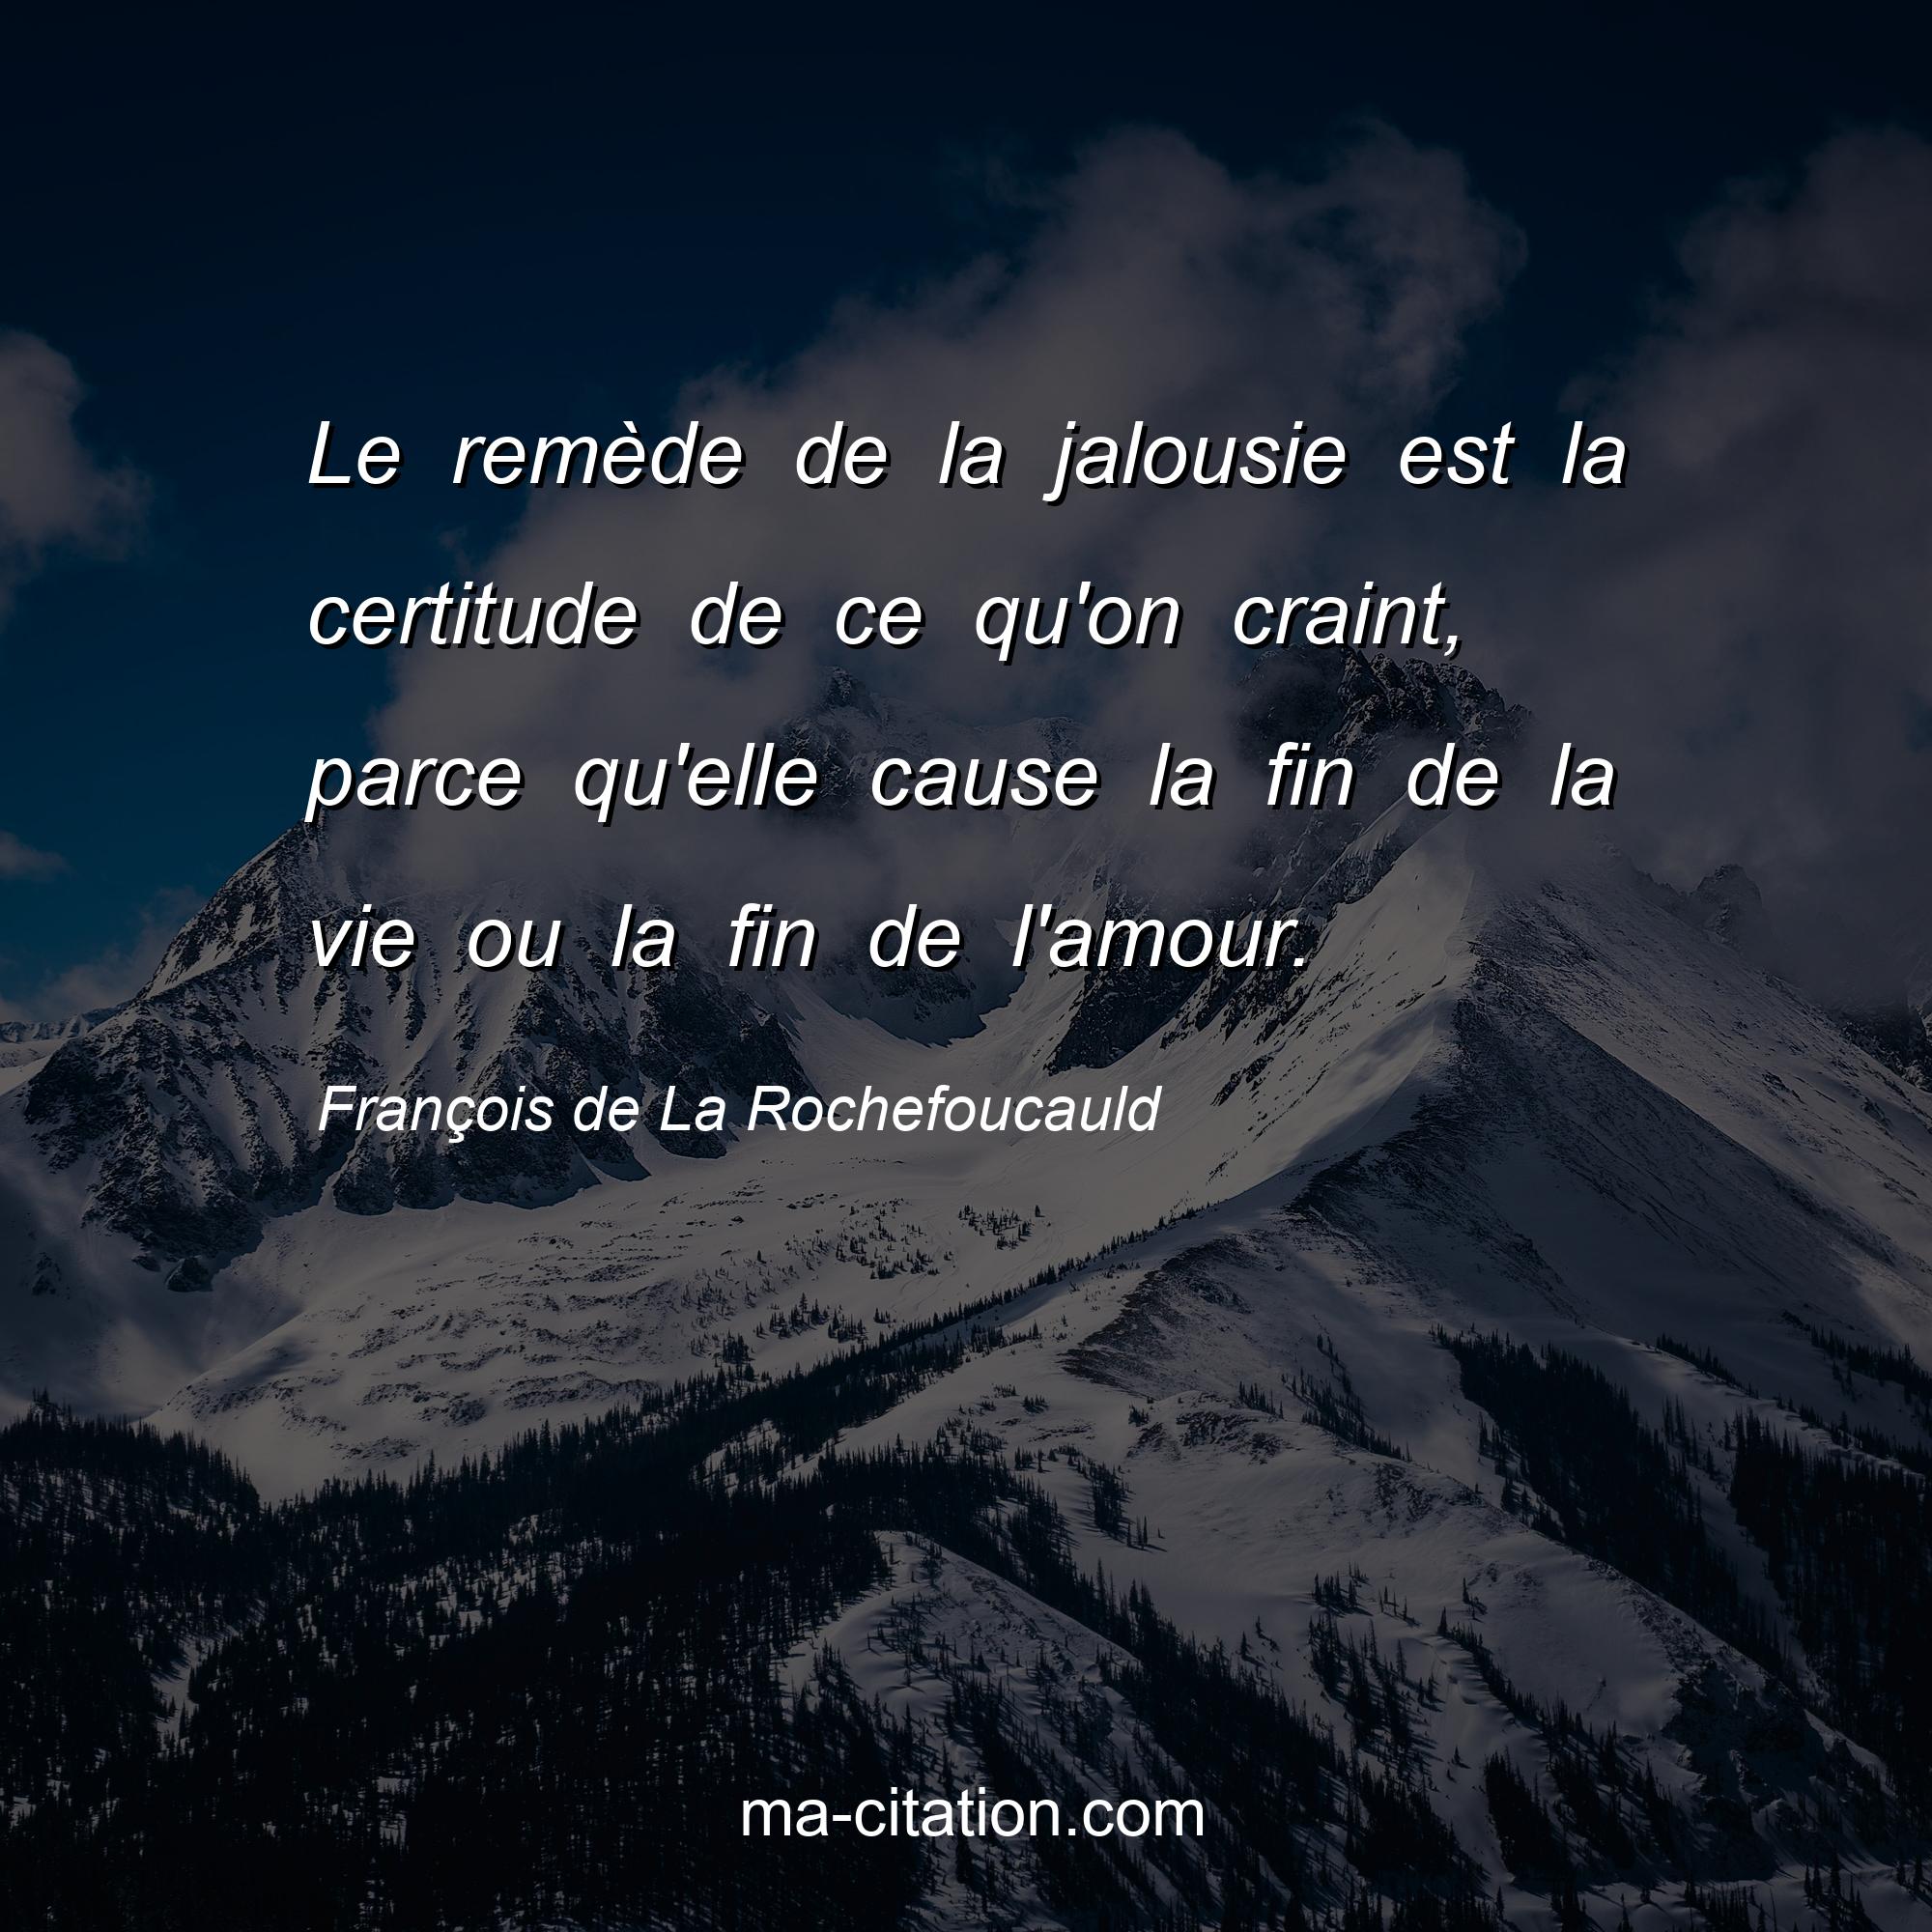 François de La Rochefoucauld : Le remède de la jalousie est la certitude de ce qu'on craint, parce qu'elle cause la fin de la vie ou la fin de l'amour.